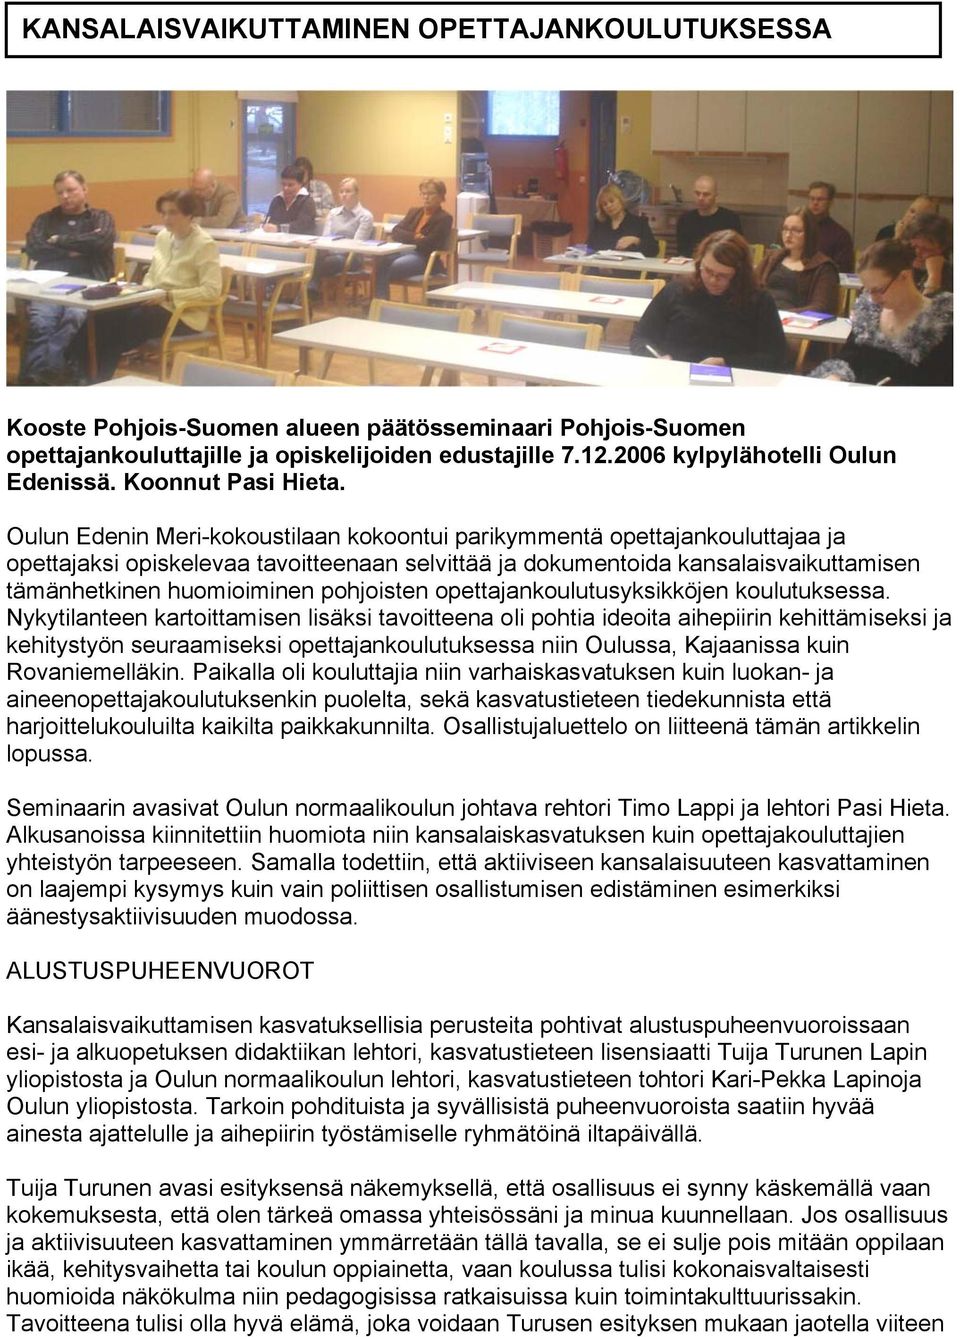 Oulun Edenin Meri-kokoustilaan kokoontui parikymmentä opettajankouluttajaa ja opettajaksi opiskelevaa tavoitteenaan selvittää ja dokumentoida kansalaisvaikuttamisen tämänhetkinen huomioiminen